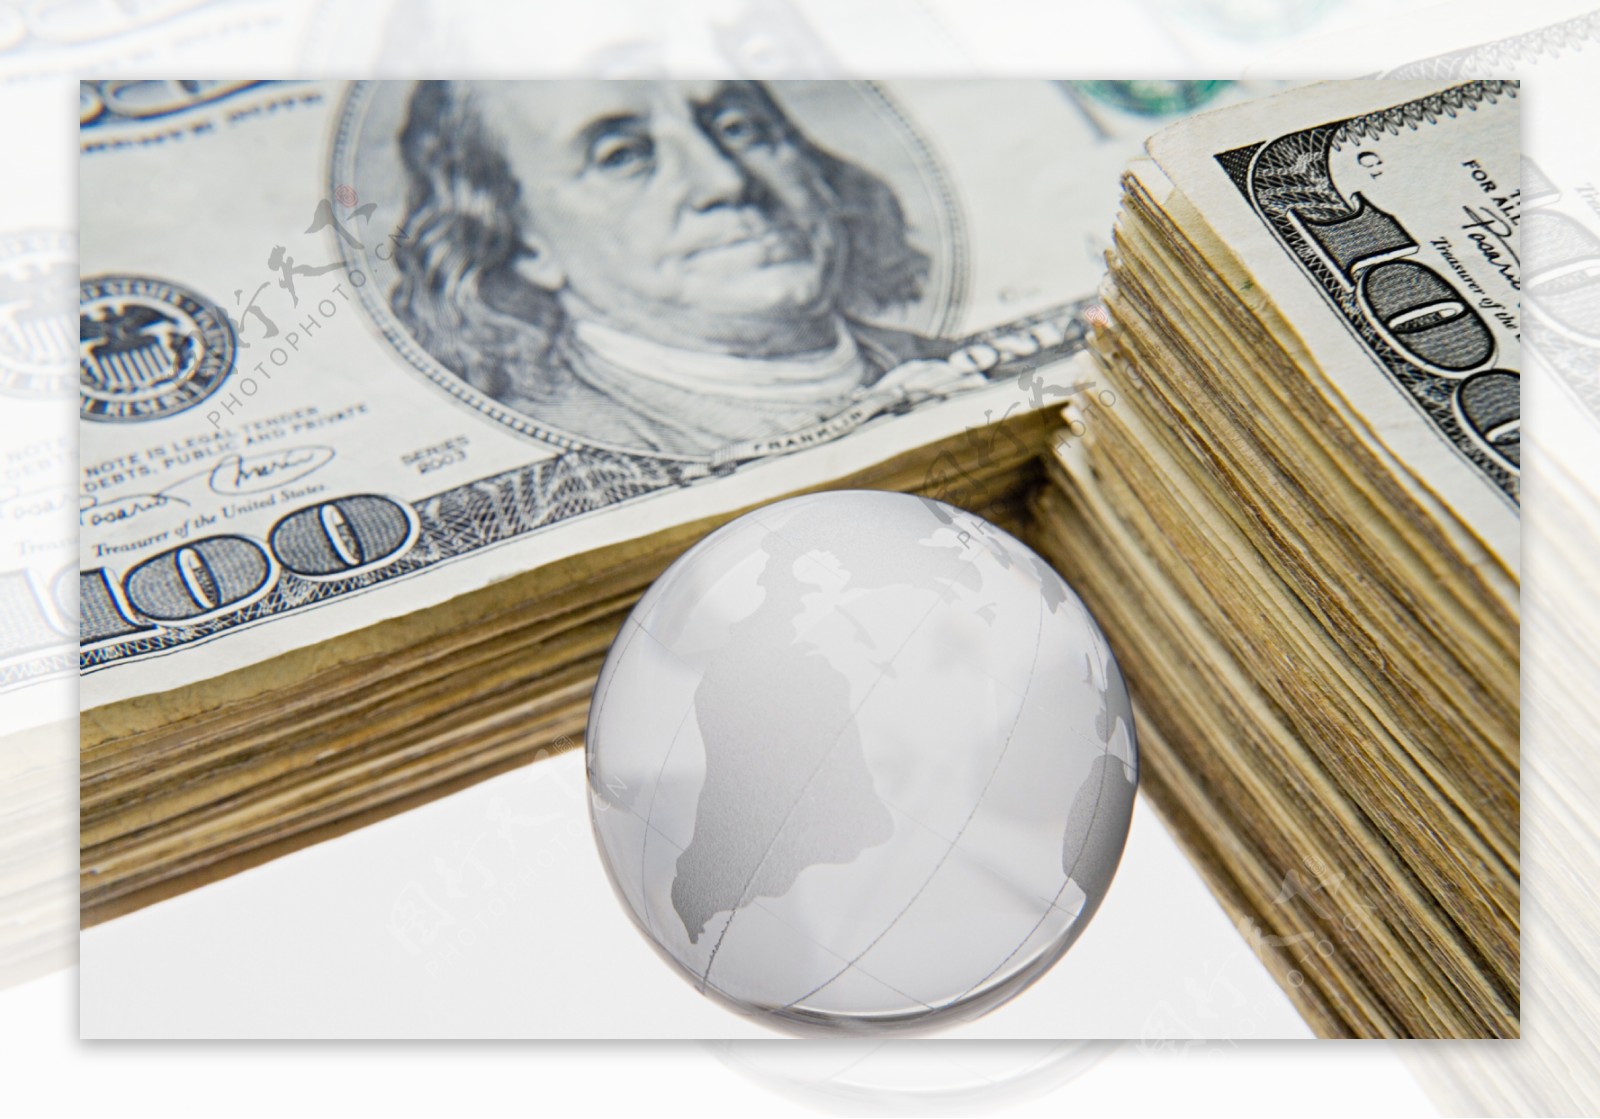 银球与美元钞票图片